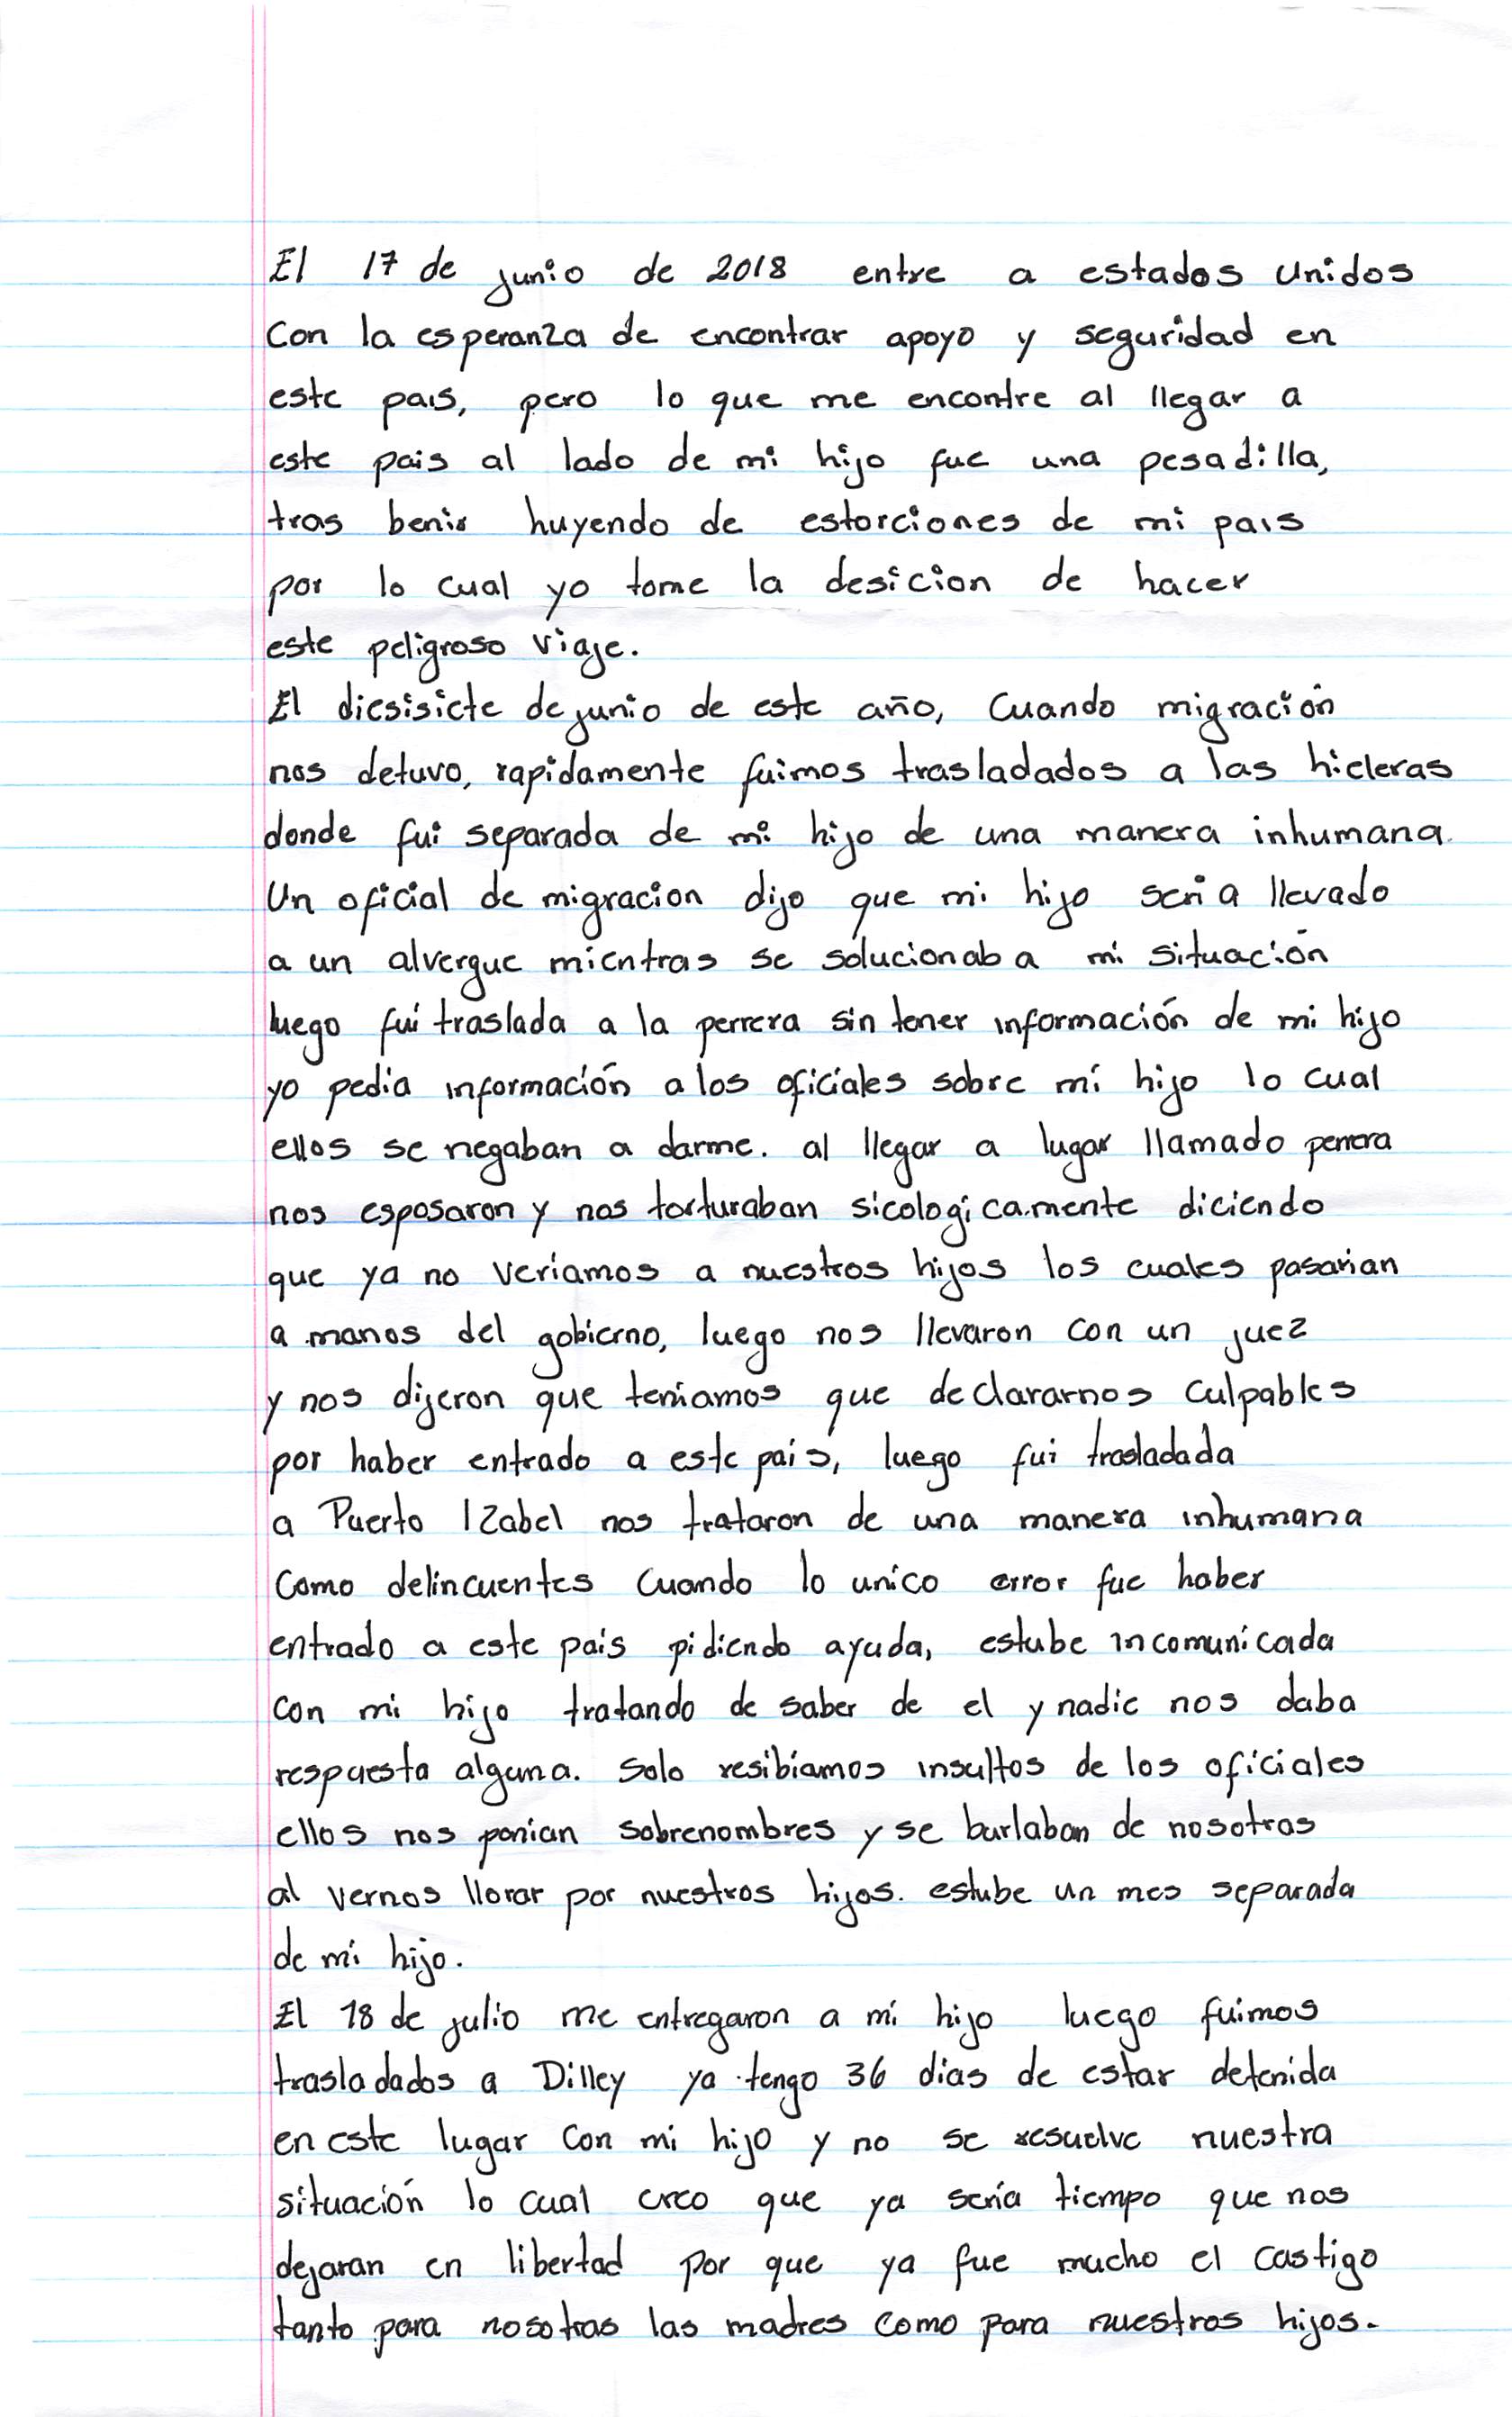 Marcela's Handwritten Letter